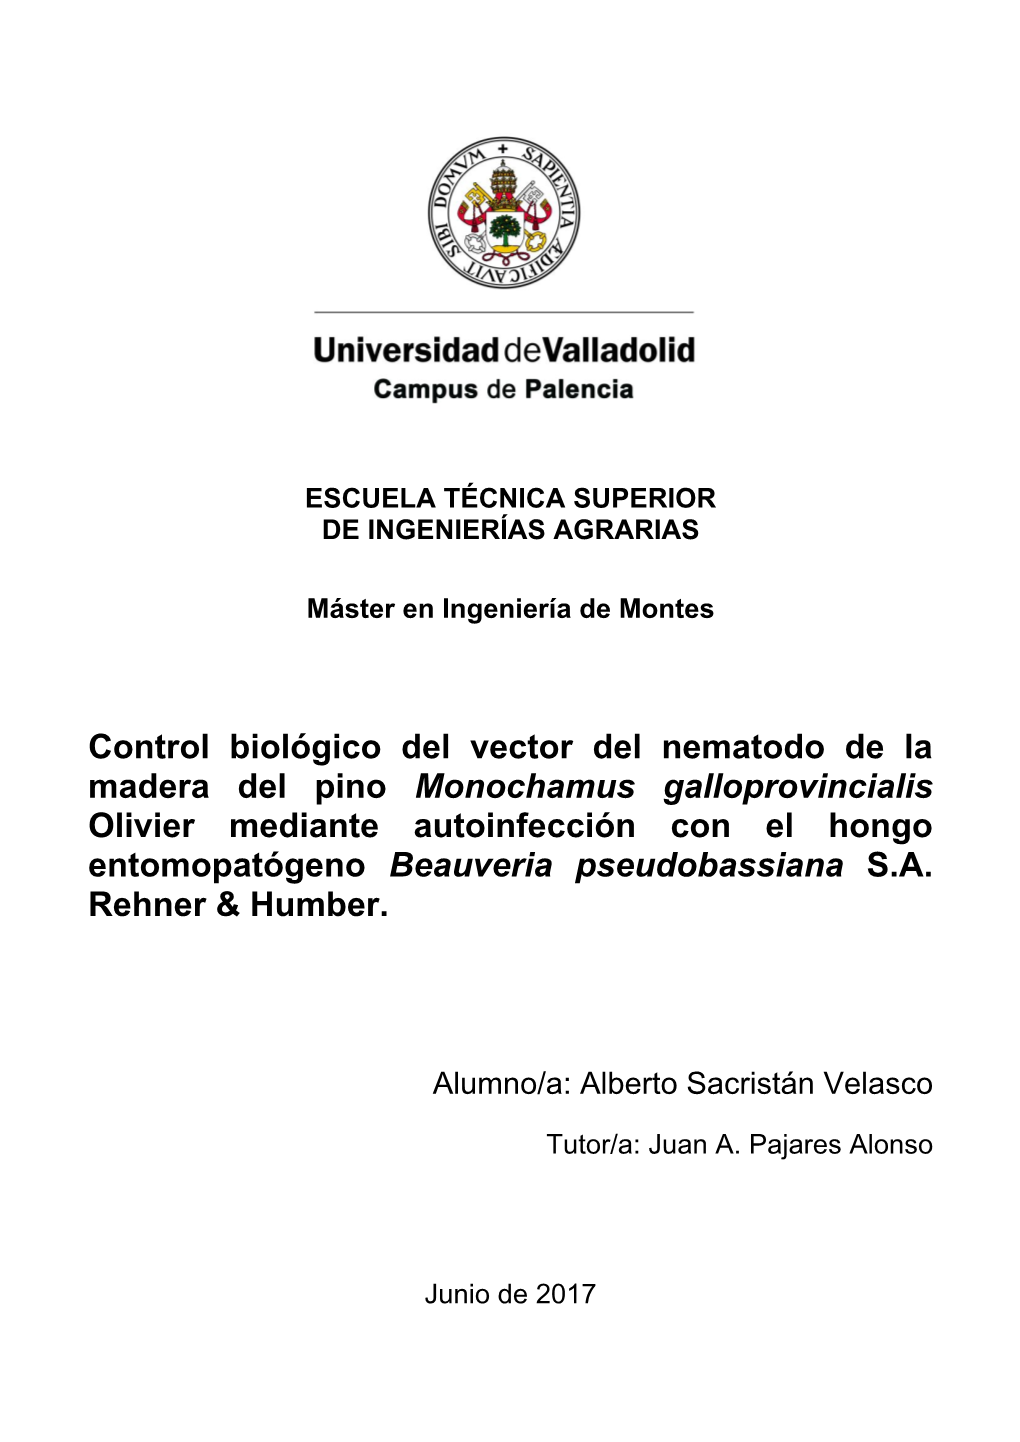 Control Biológico Del Vector Del Nematodo De La Madera Del Pino